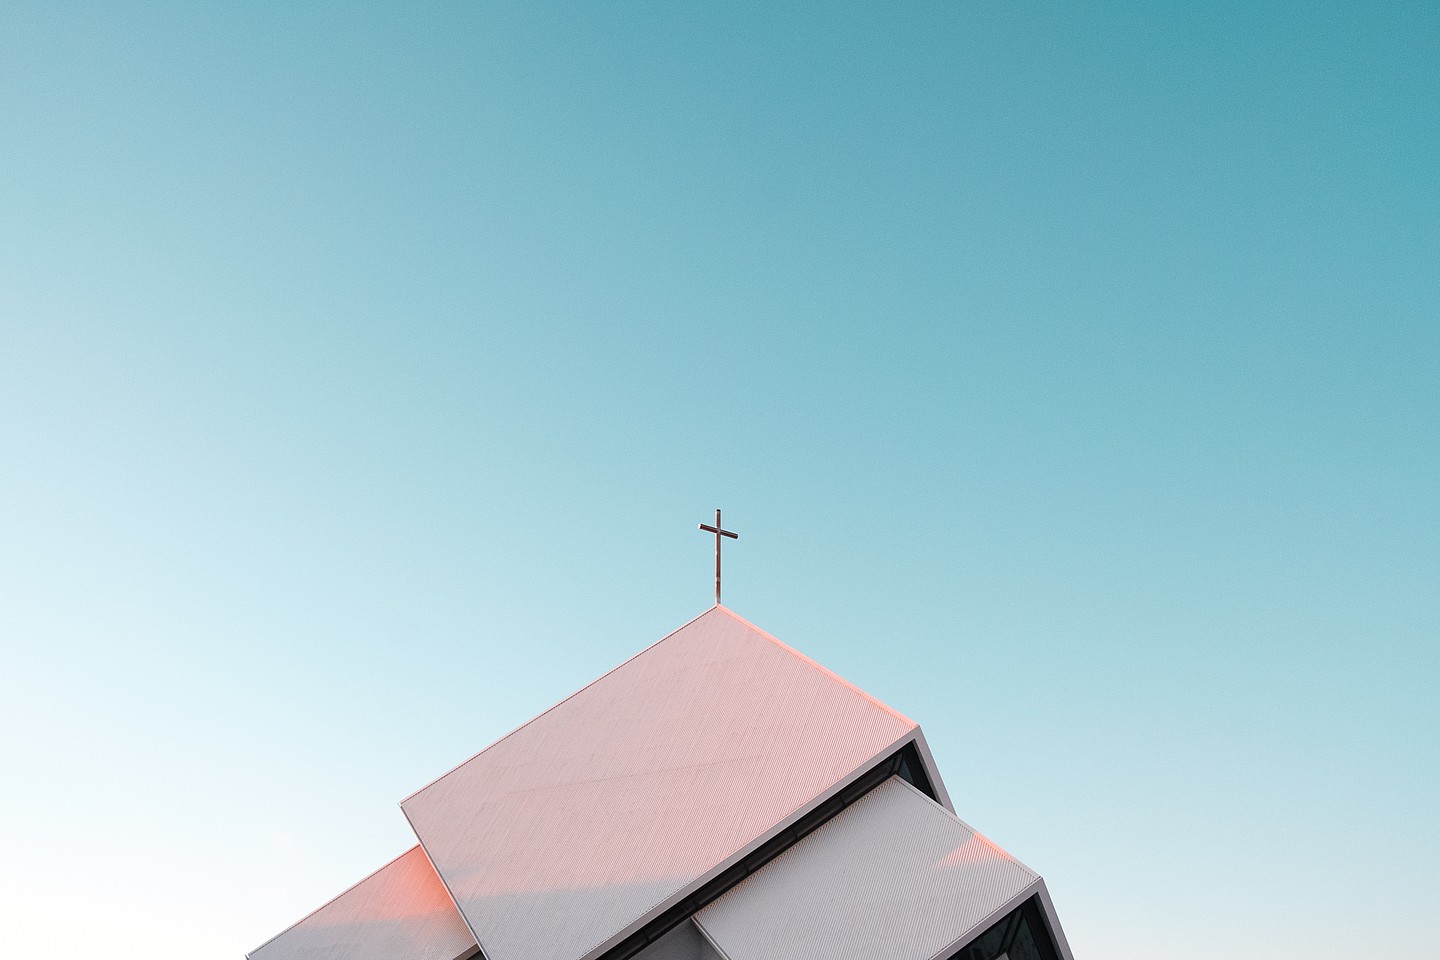 Dach einer modernen Kirche vor blauem Himmel, an der Spitze ein christliches Kreuz